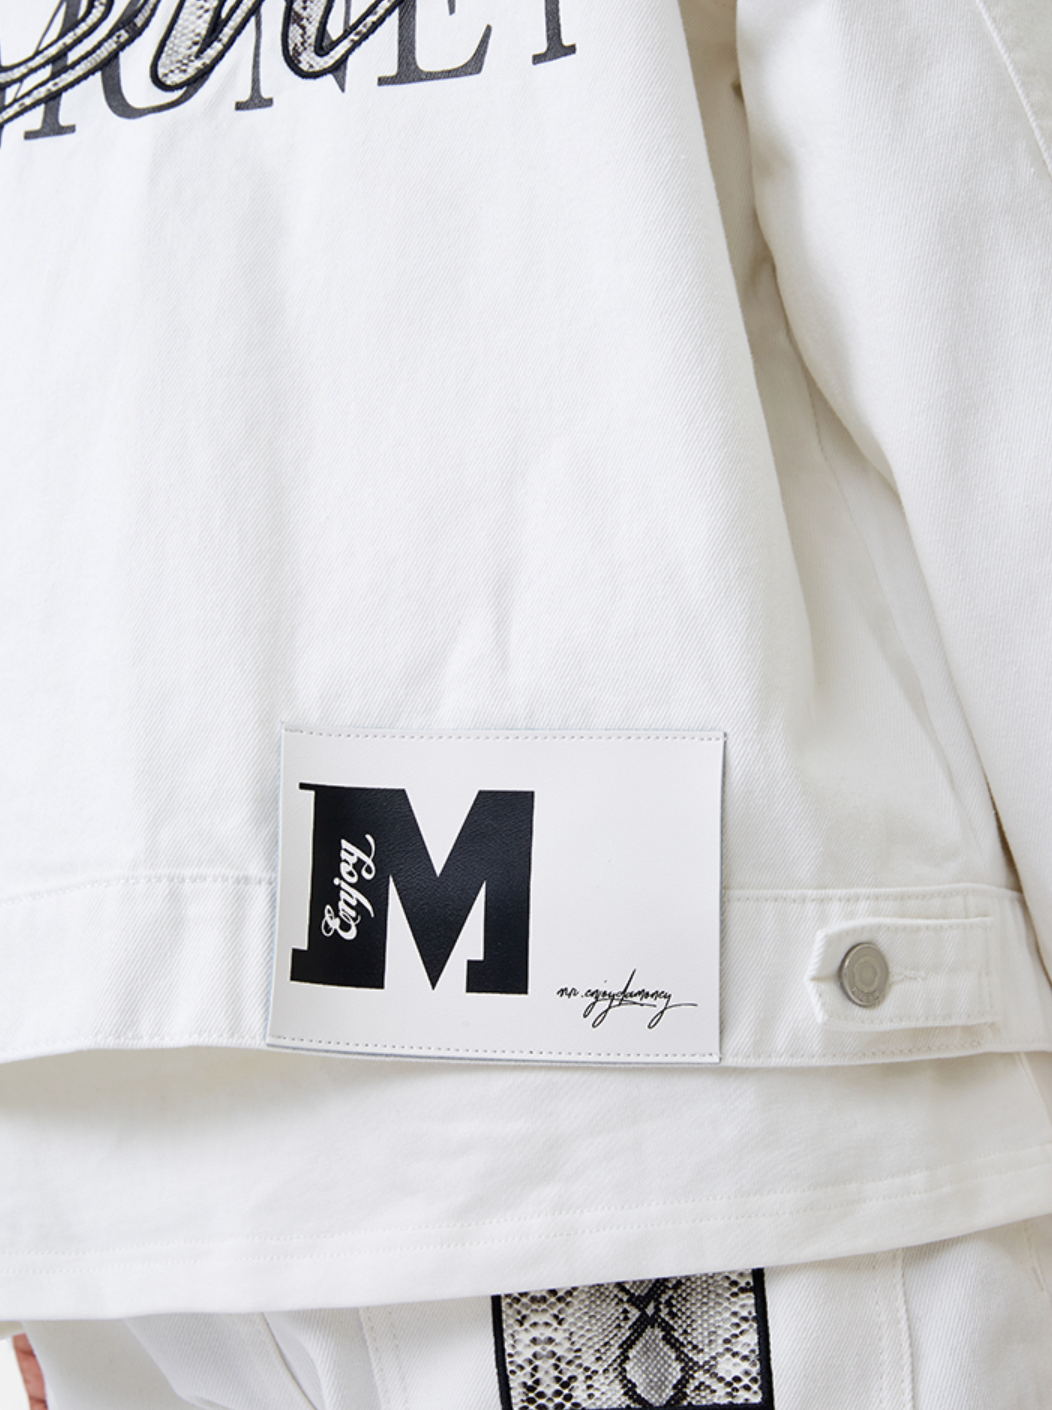 MEDM Casual Letter Logo Denim Jacket